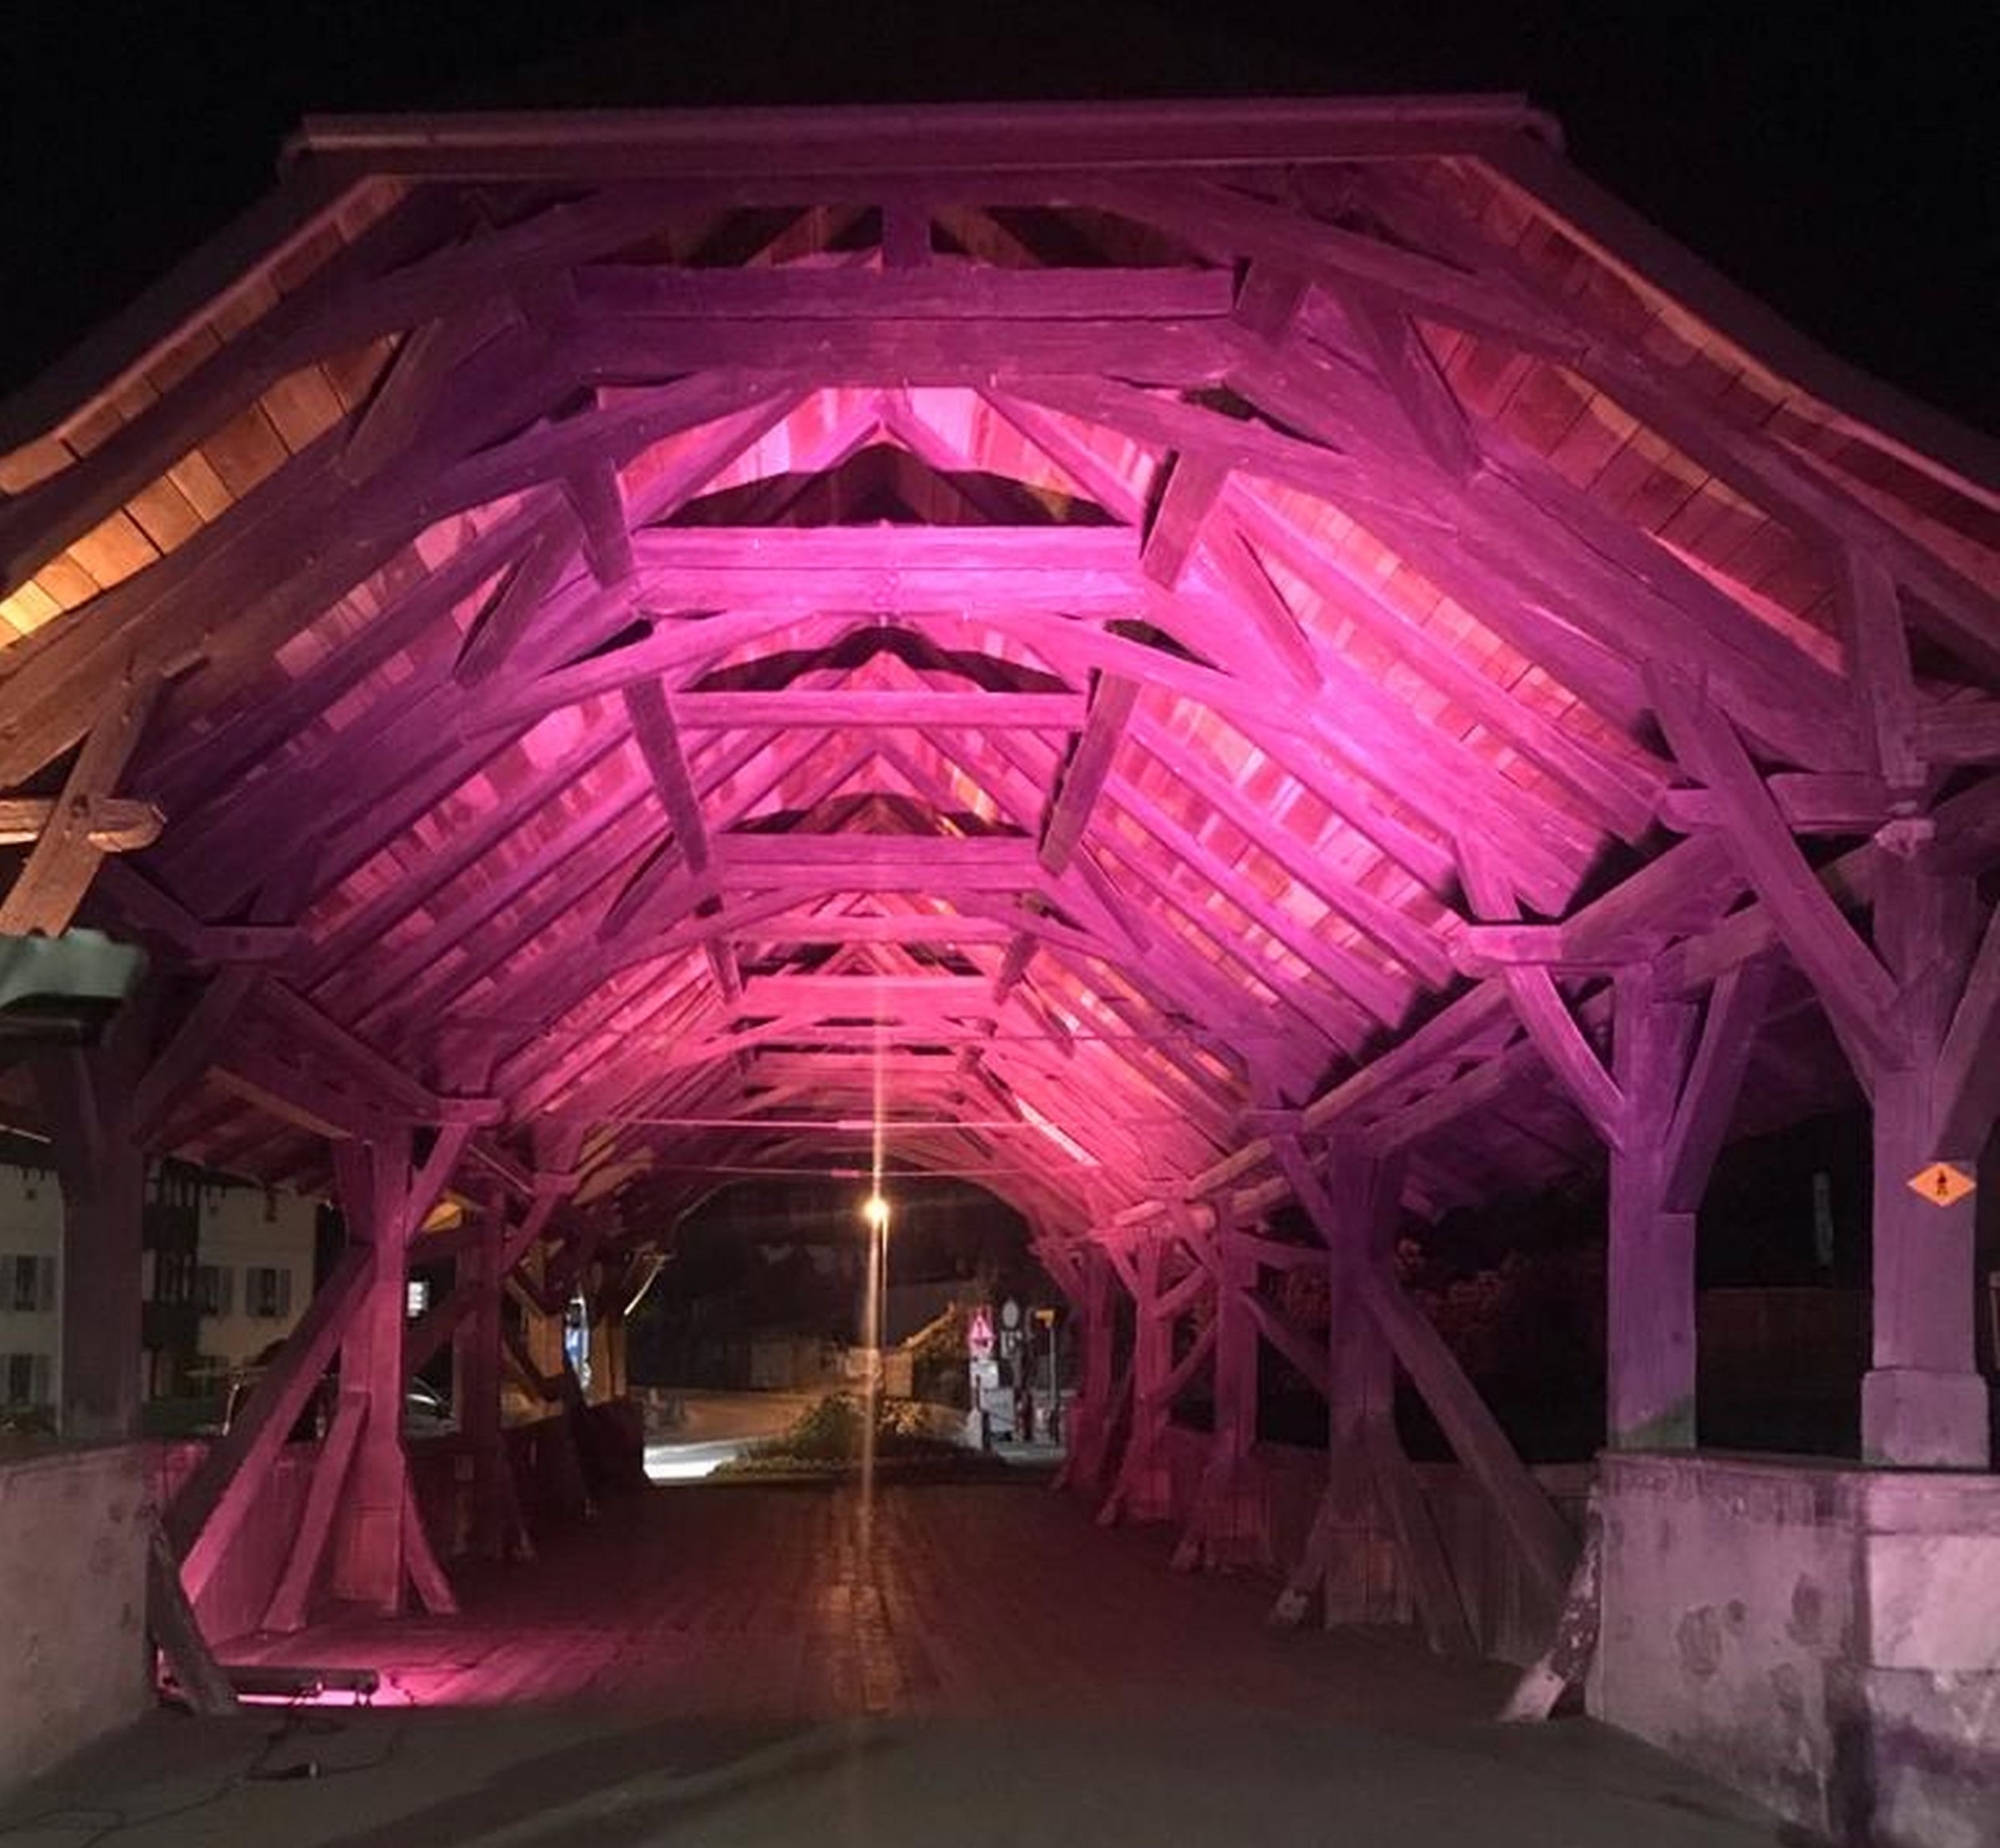 Les balades en lumières mettront en couleurs le patrimoine architectural des villes hôtes, comme le Vieux Pont à Monthey.